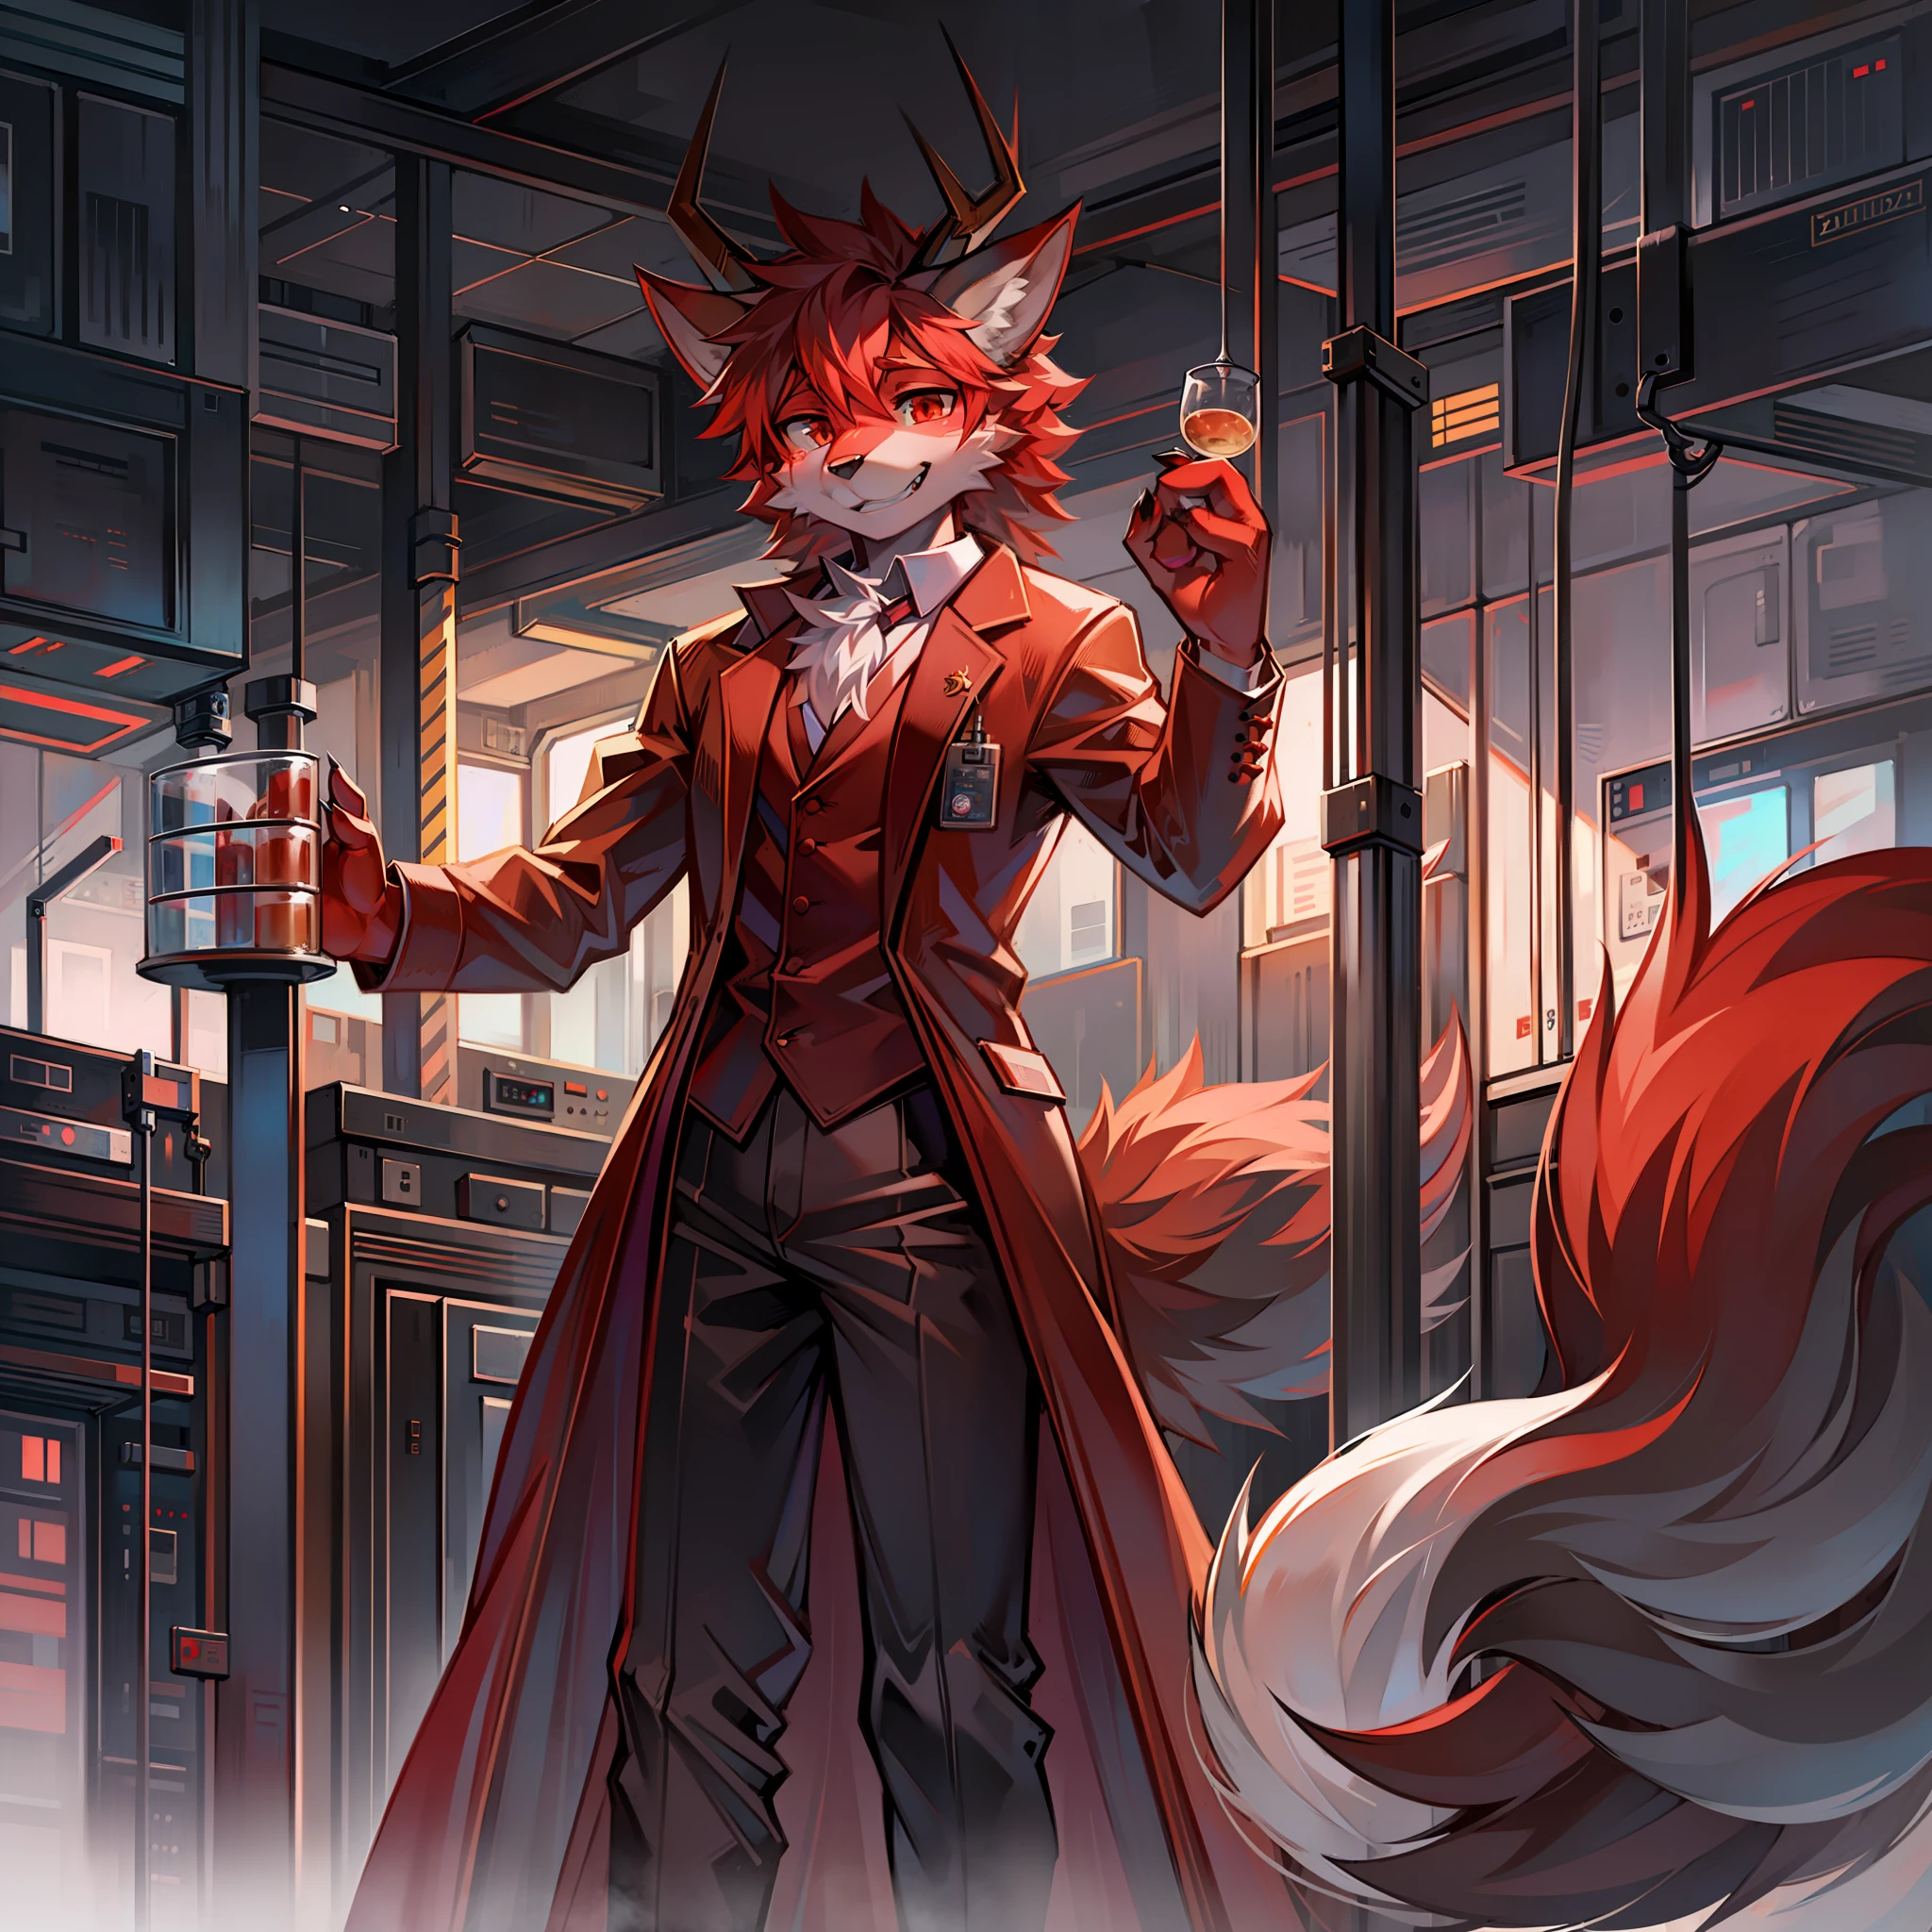 Furry Red Wolf vestido como um cientista em um laboratório com 4 chifres de dragão.